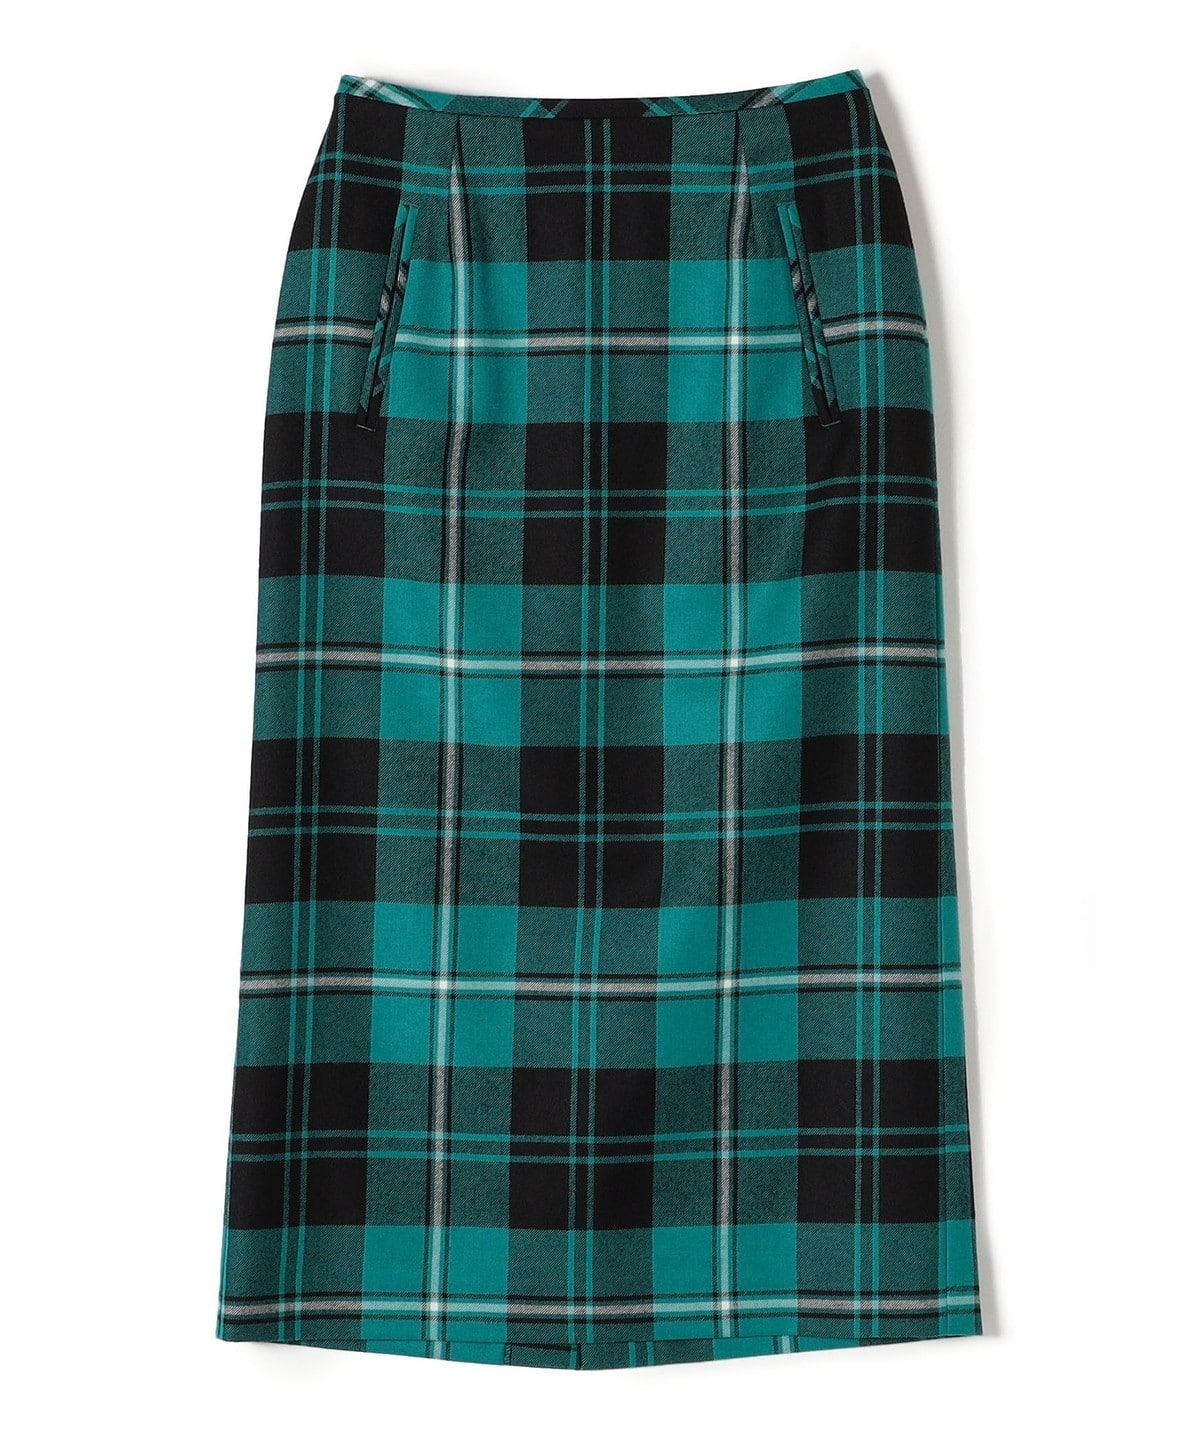 ウールタータンチェックタイトスカート◇: スカート SHIPS 公式サイト 